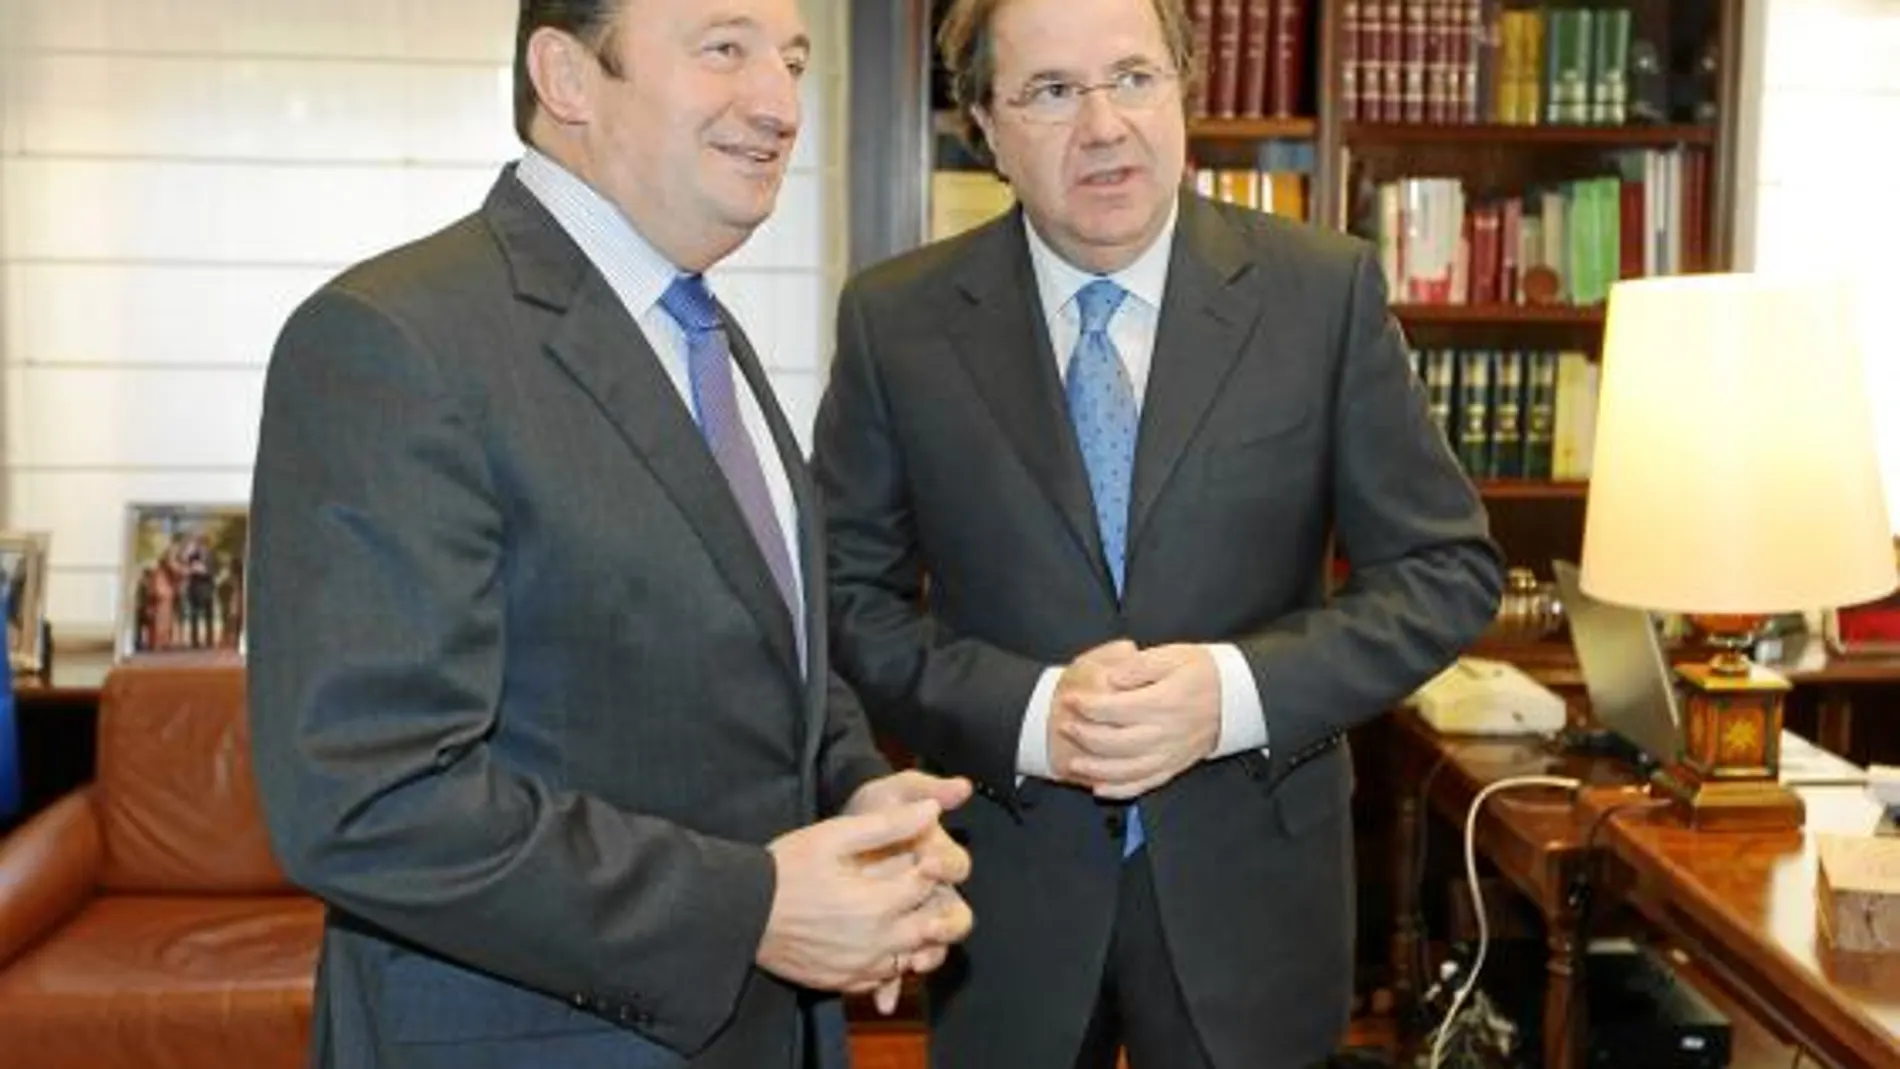 El presidente Juan Vicente Herrera se reunió con su homólogo riojano, Pedro Sanz, en Valladolid